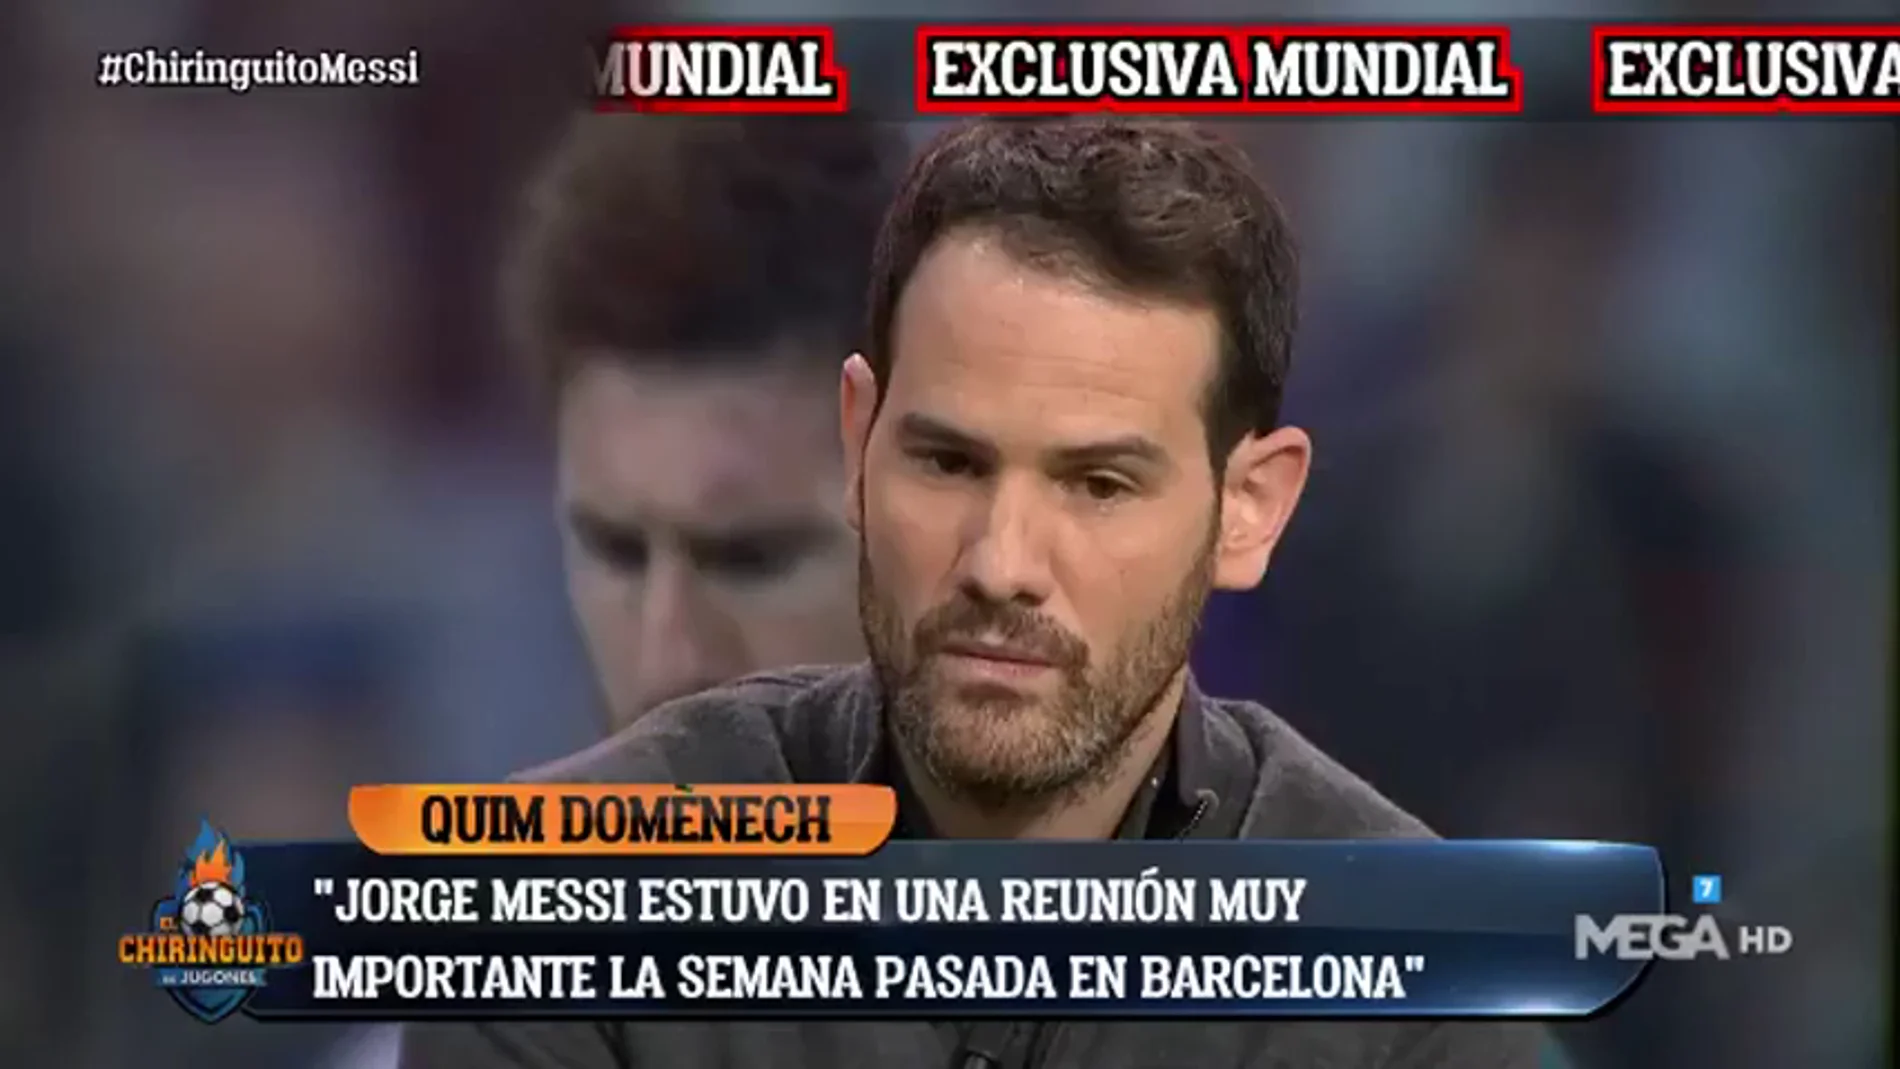 Exclusiva de Quim Domènech: "Jorge Messi tuvo una reunión con el consulado de Catar"